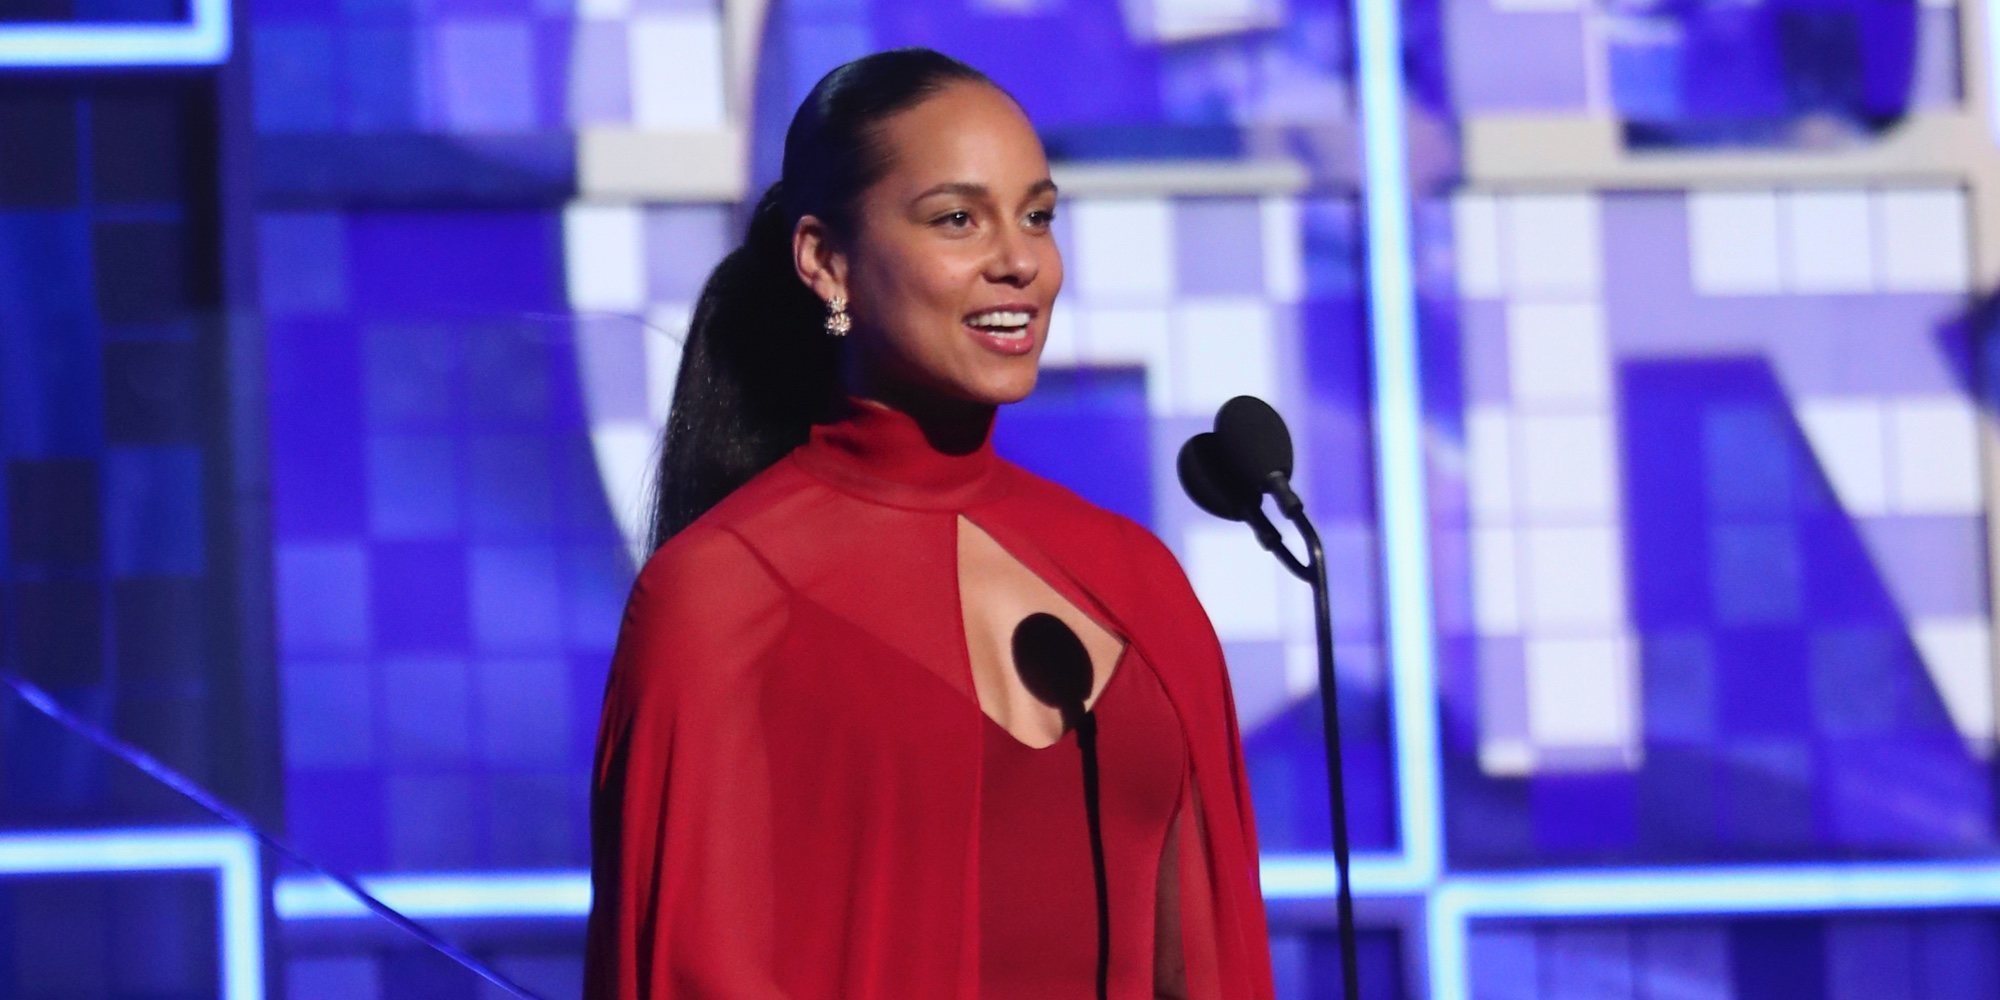 El discurso de Alicia Keys en los Grammy 2019: "La música es nuestro lenguaje global compartido"